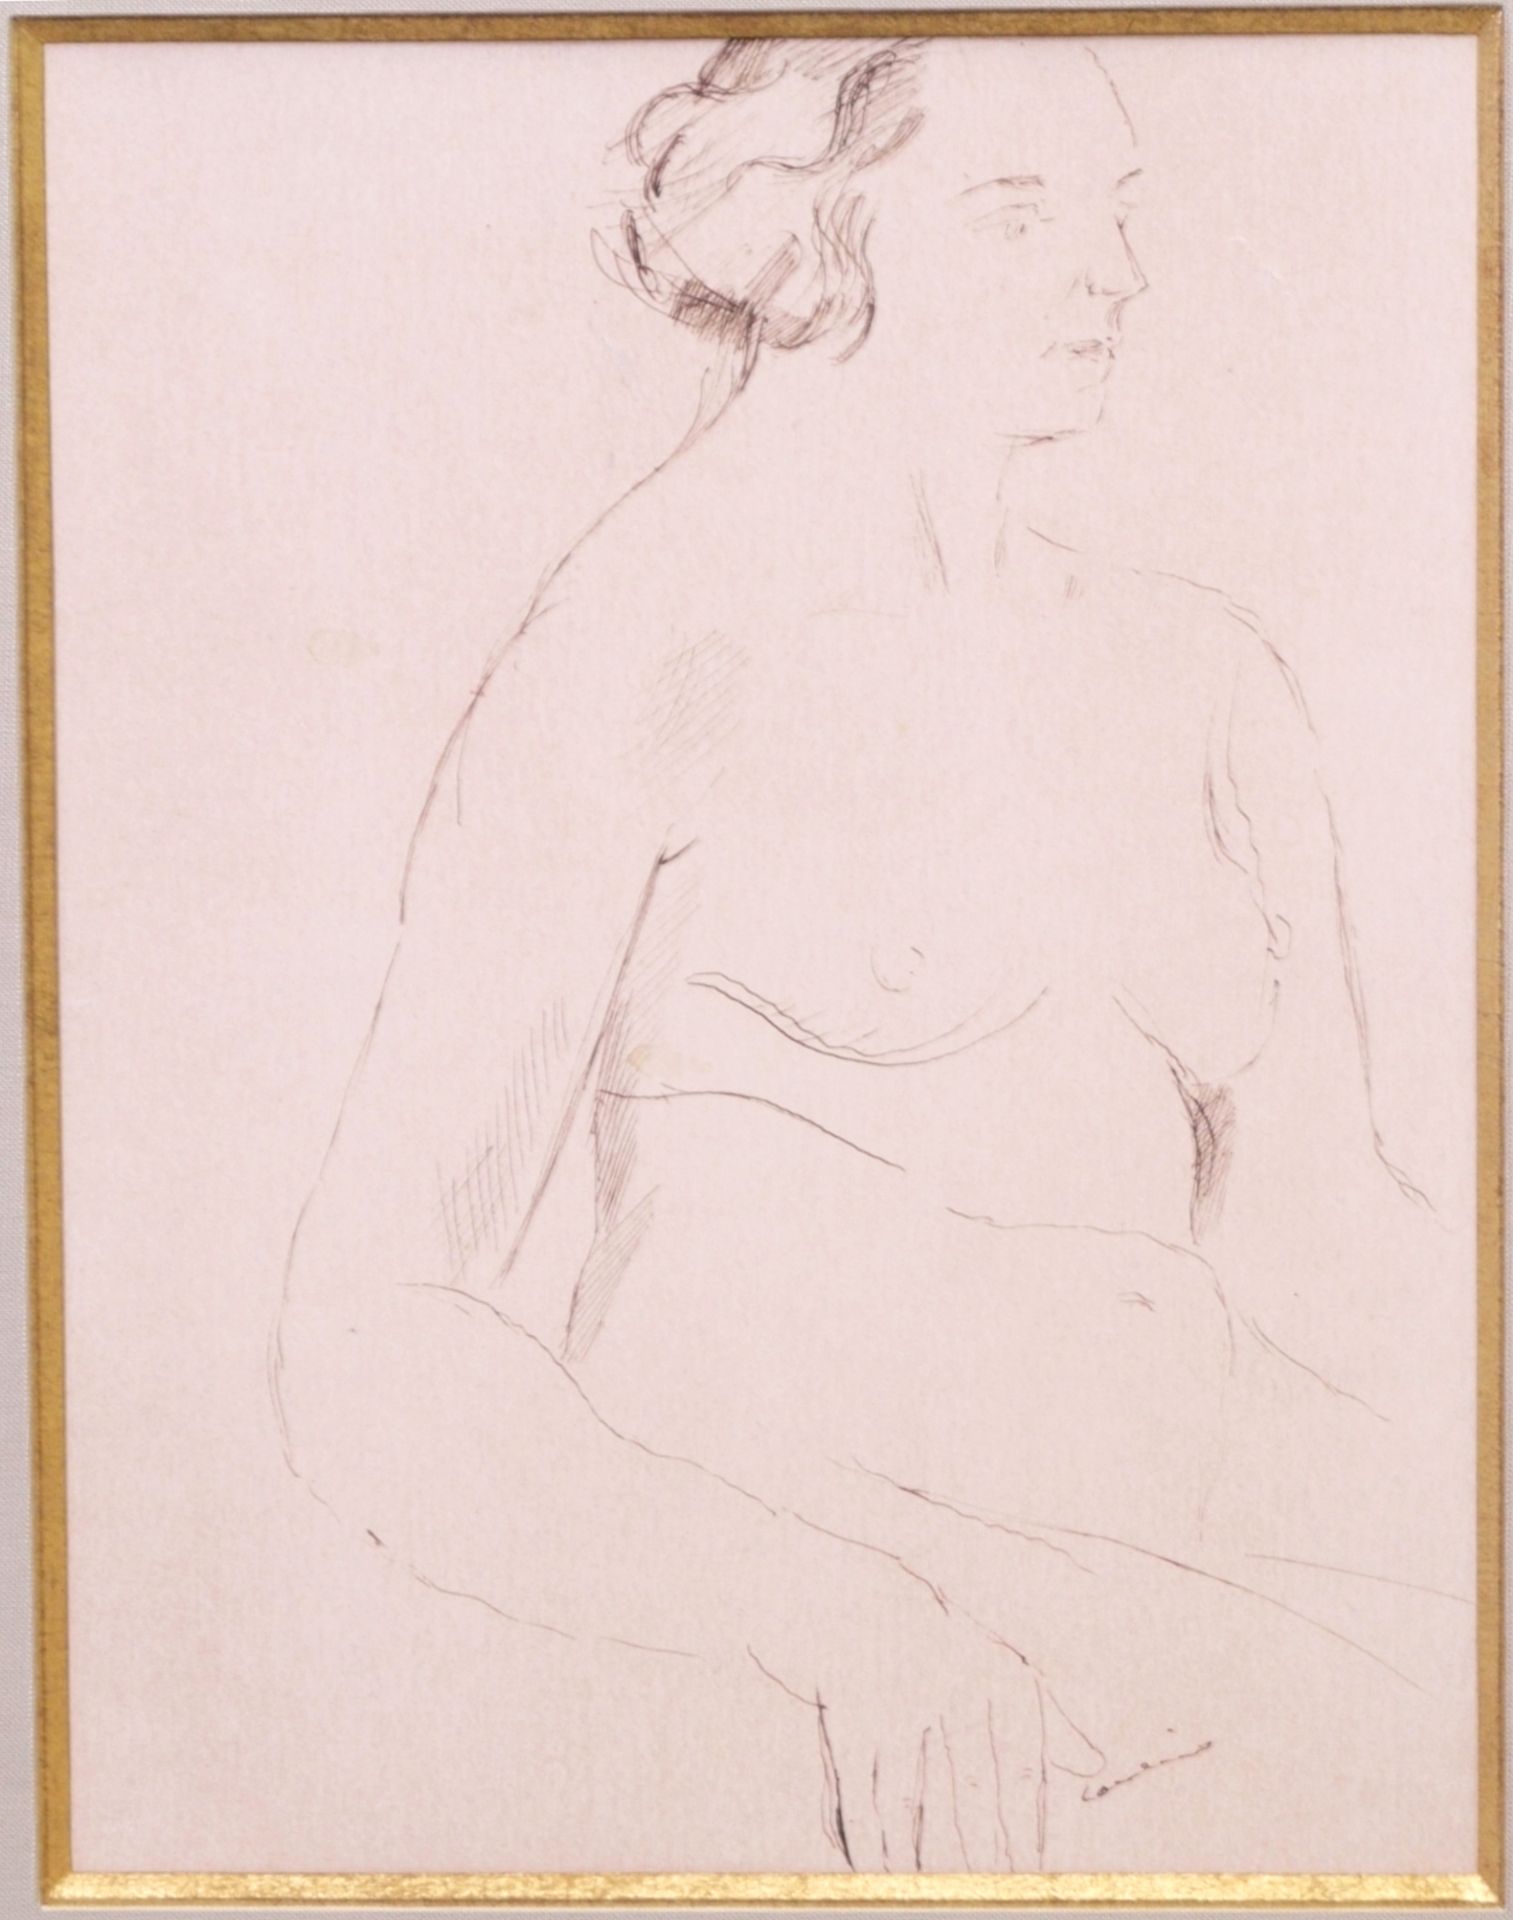 Coubine, Othon/ Kubîn (1883-1969) - Federzeichnung Studie Sitzender Frauenakt - Bild 2 aus 4